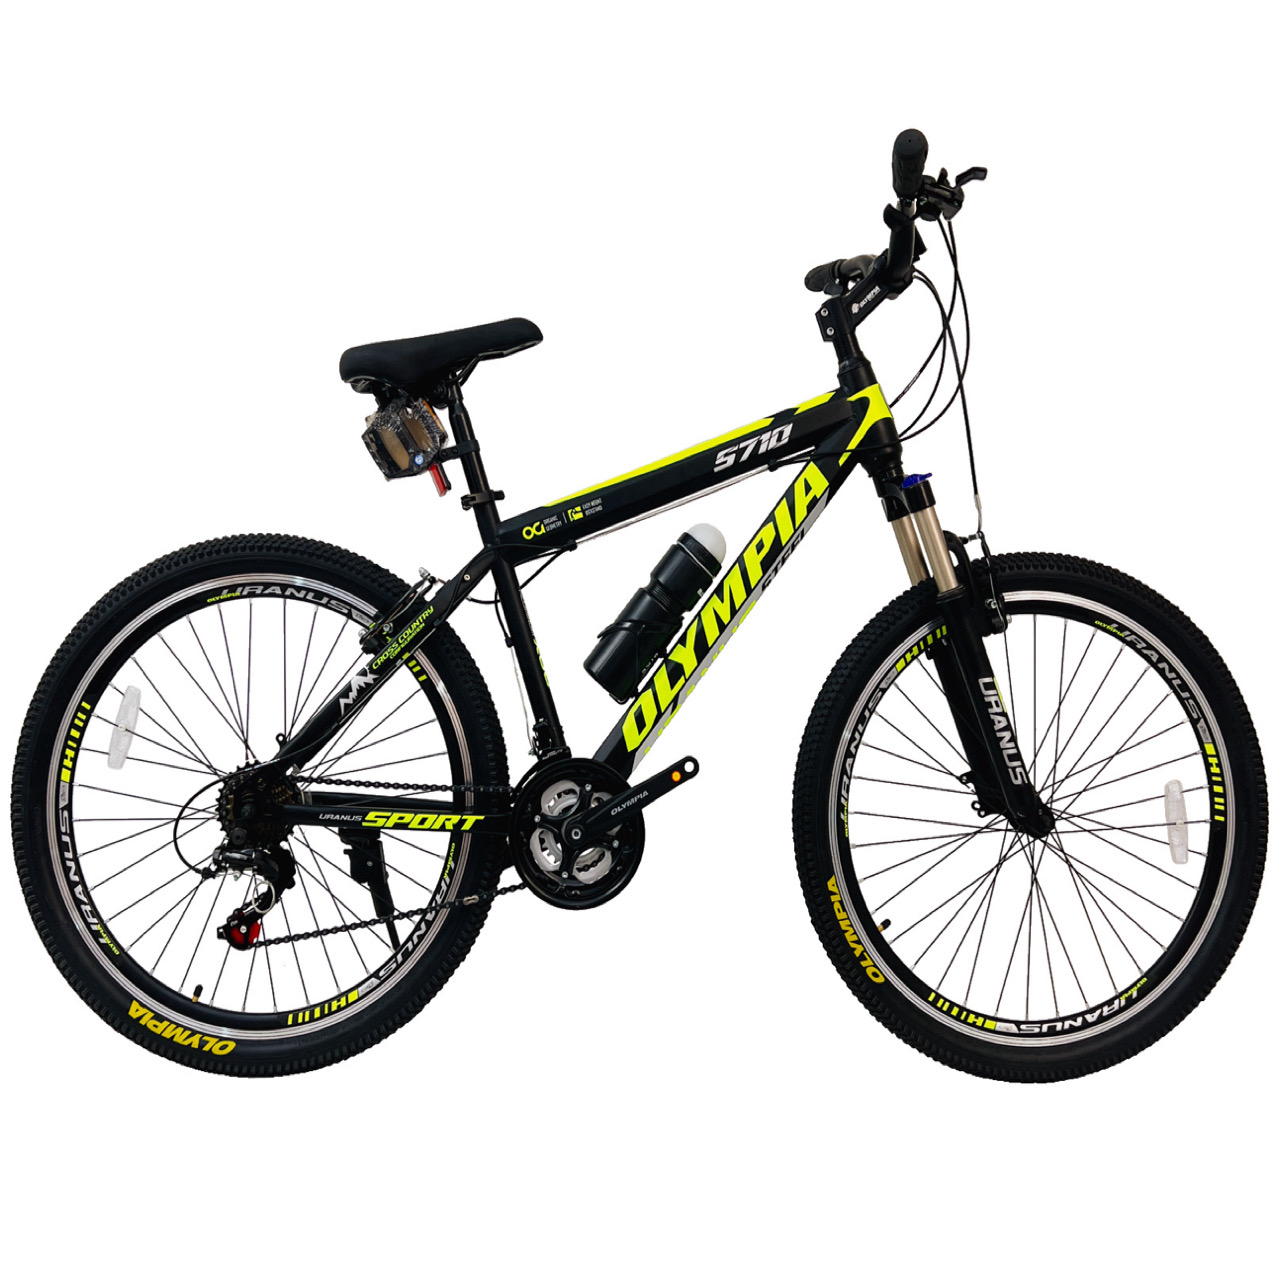 نکته خرید - قیمت روز دوچرخه کوهستان المپیا مدل STEEL SPORT کد 5710 سایز طوقه 26 خرید